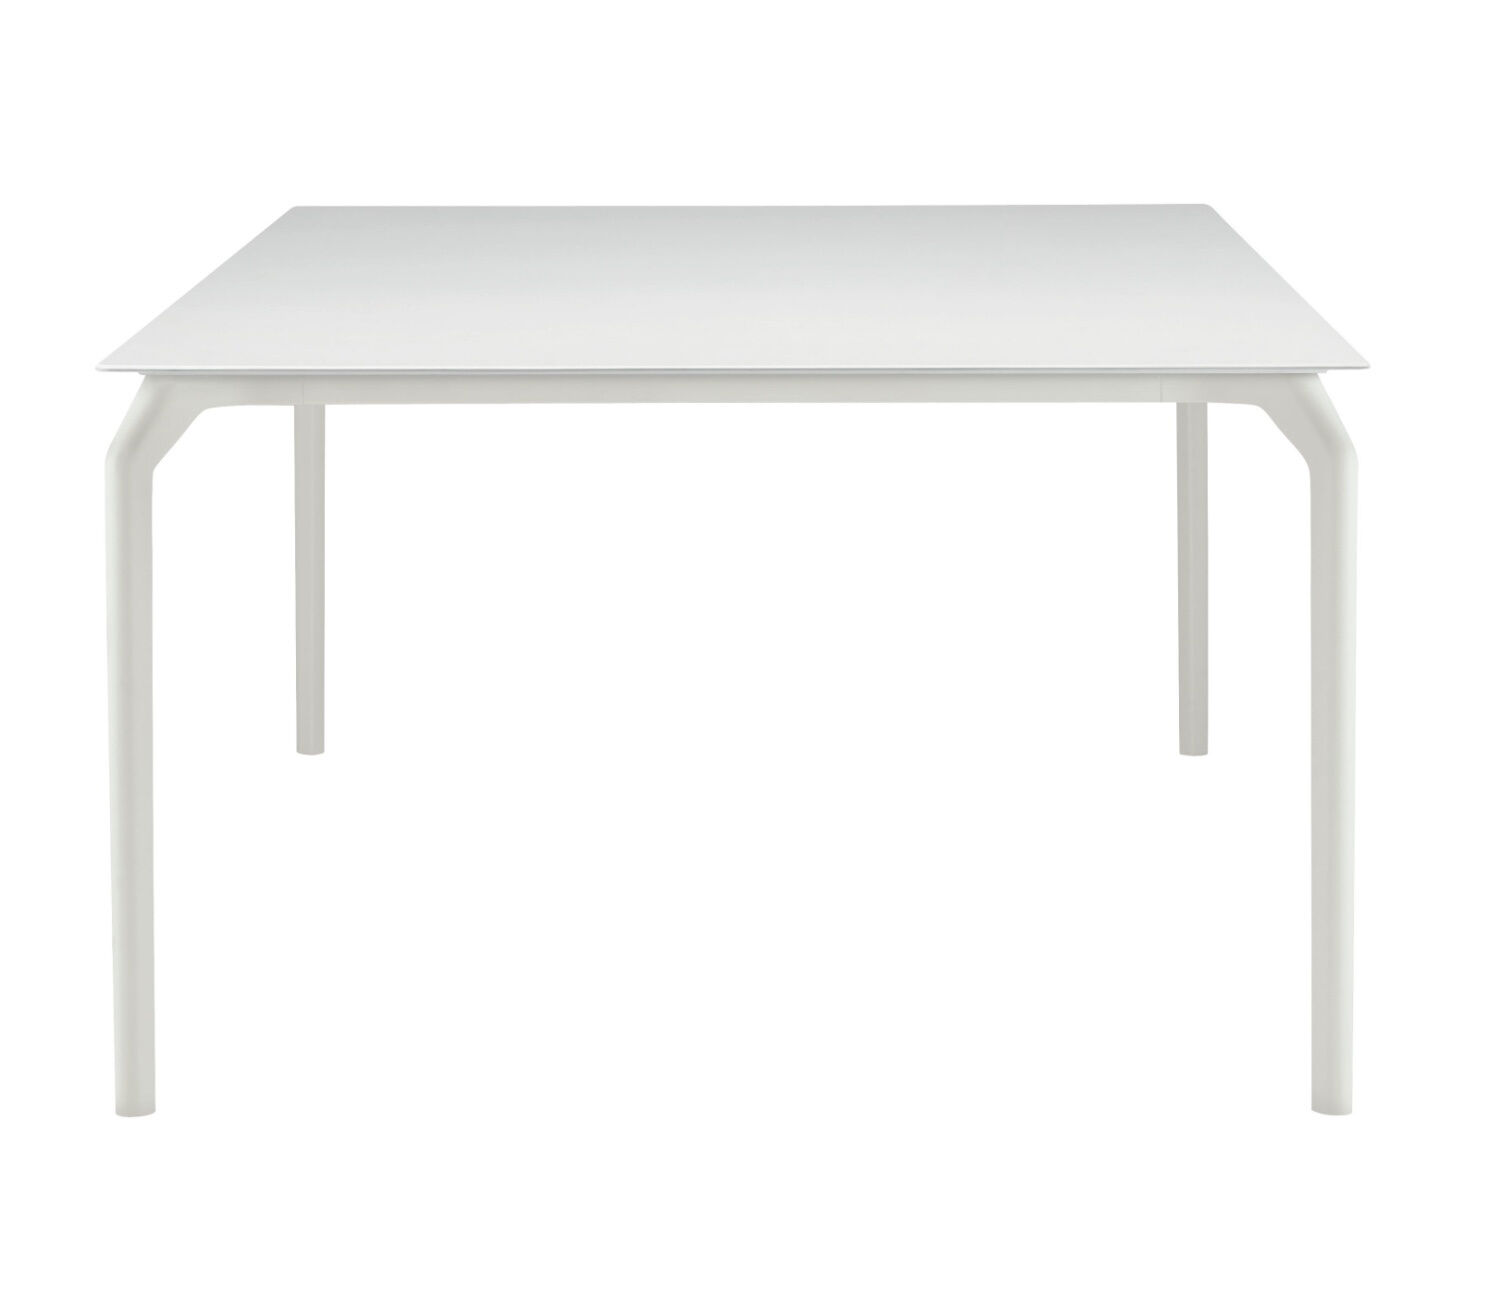 Tisch TecTischplatte LaminatFull Color Weiß Gestell Aluminium 